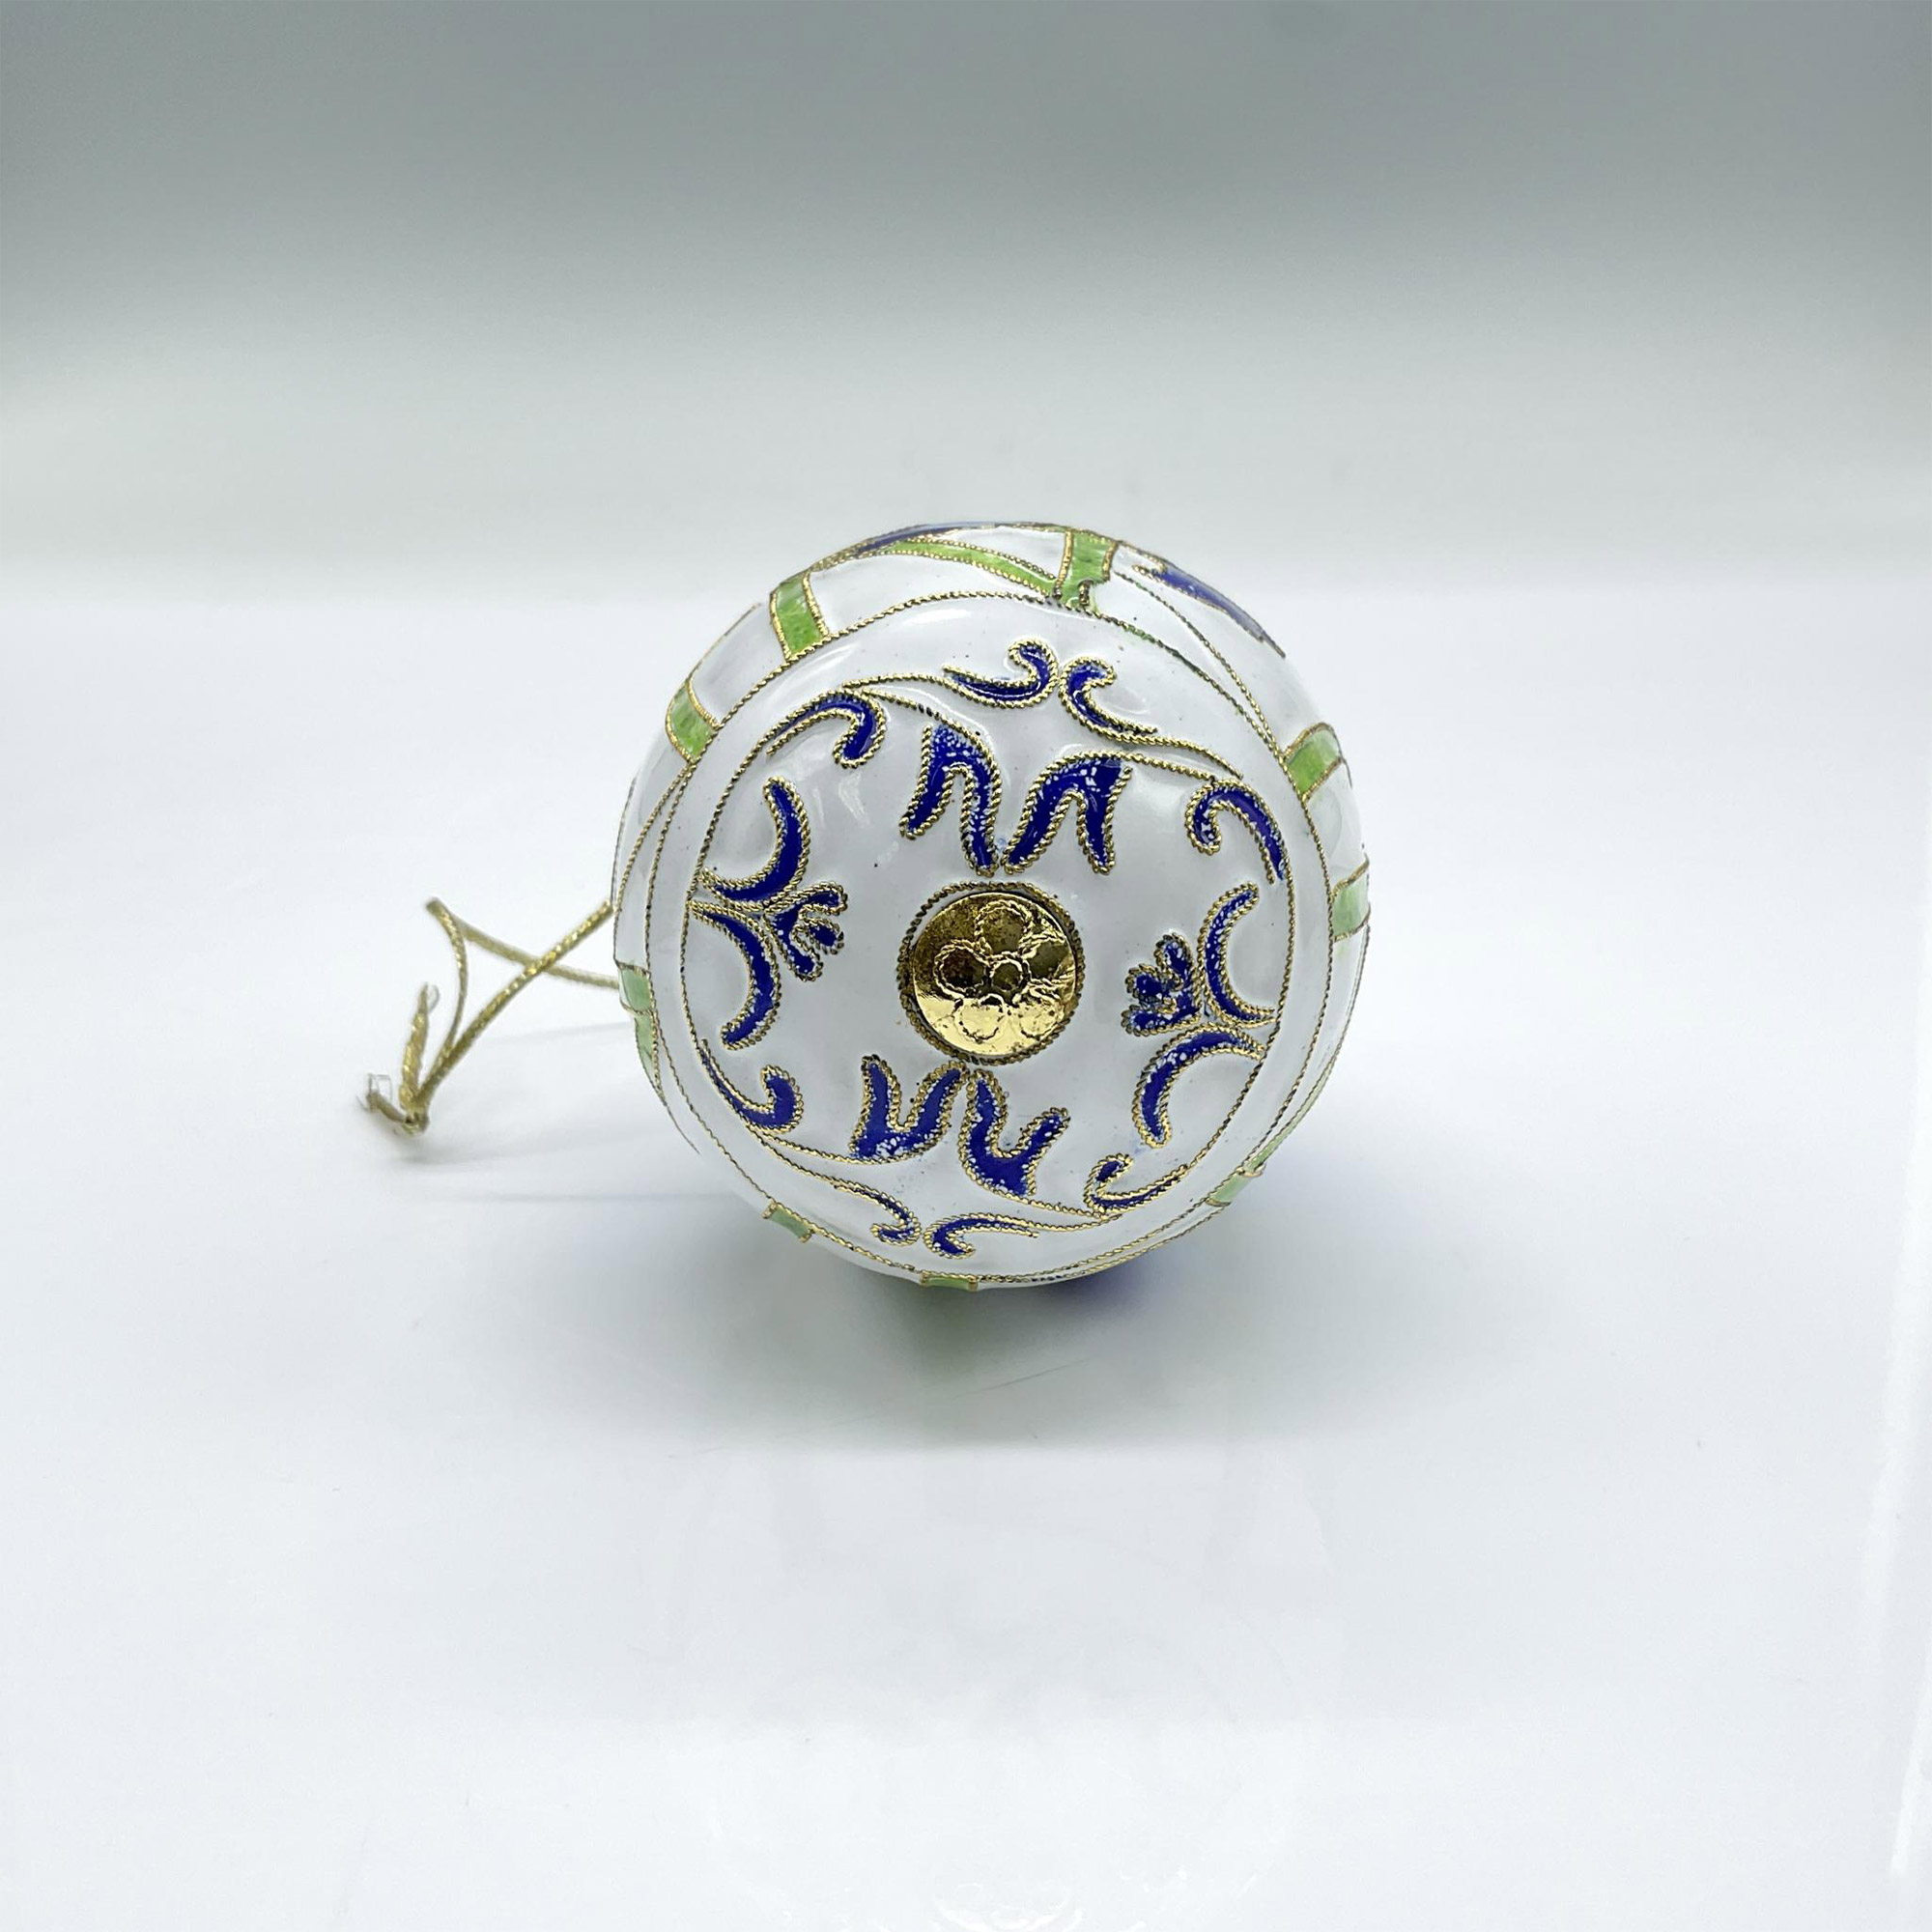 Vintage Cloisonne Enamel Egg Ornament, Blue Flowers - Image 3 of 3